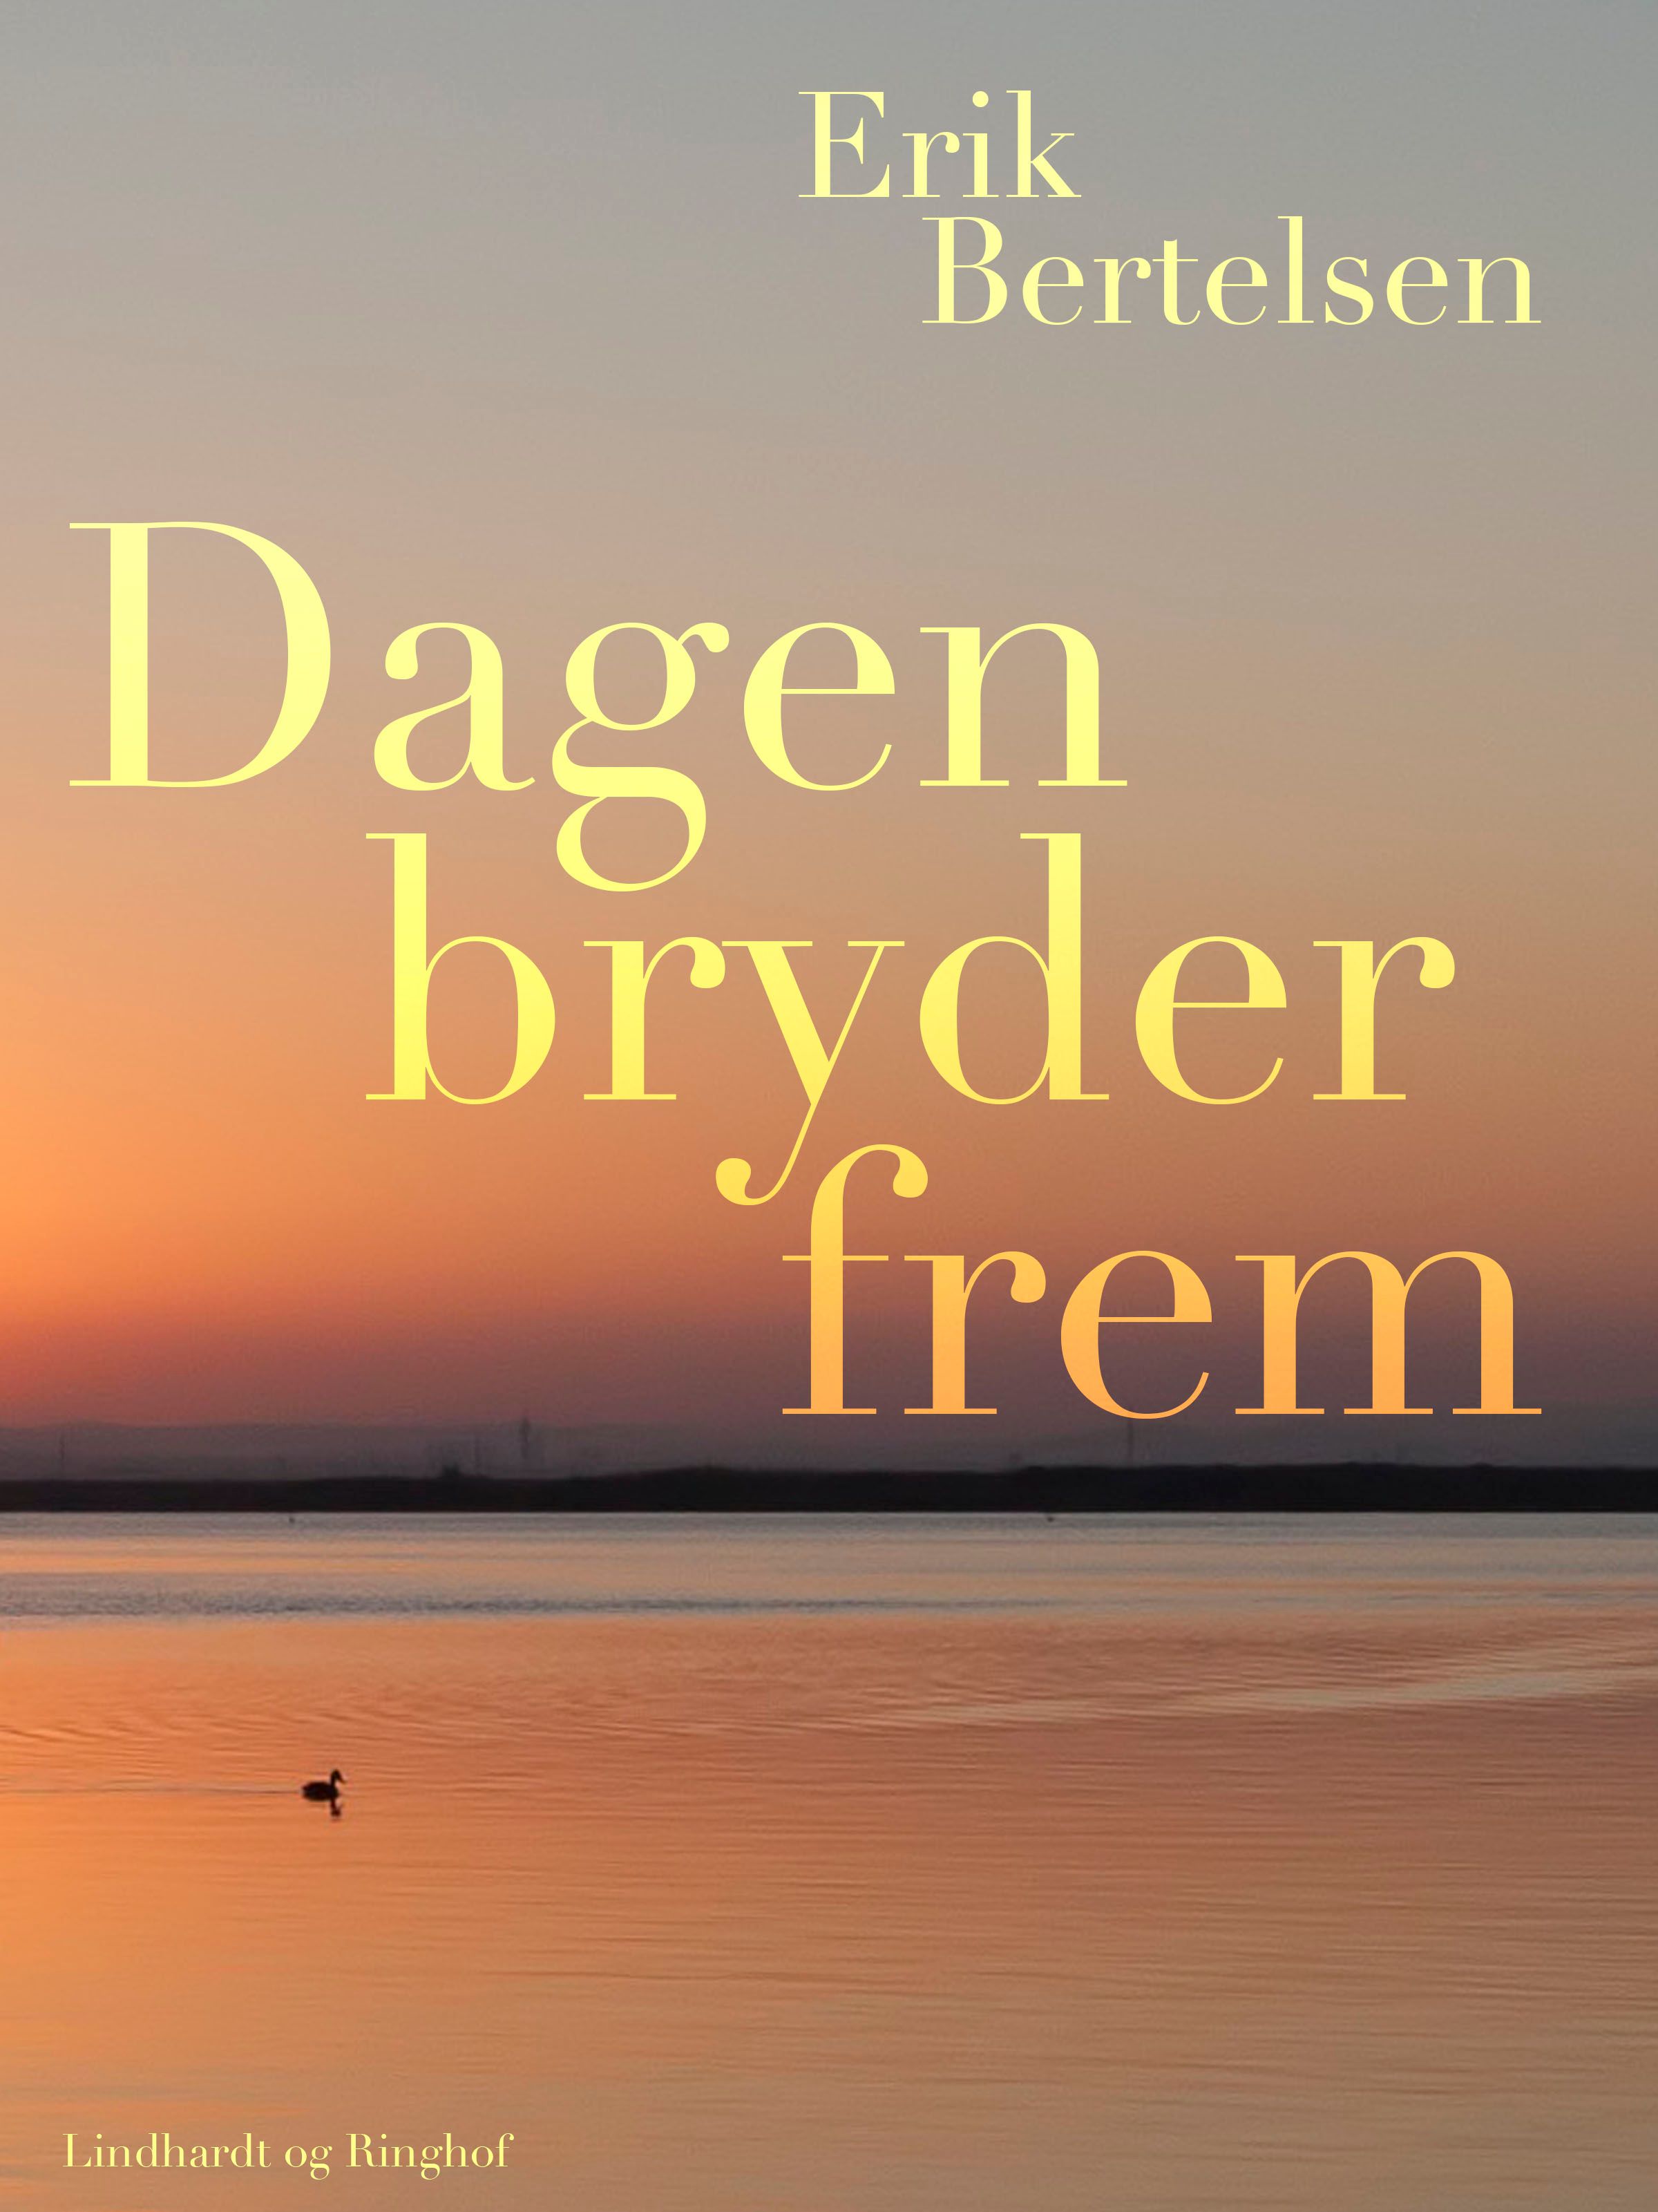 Dagen bryder frem, audiobook by Erik Bertelsen